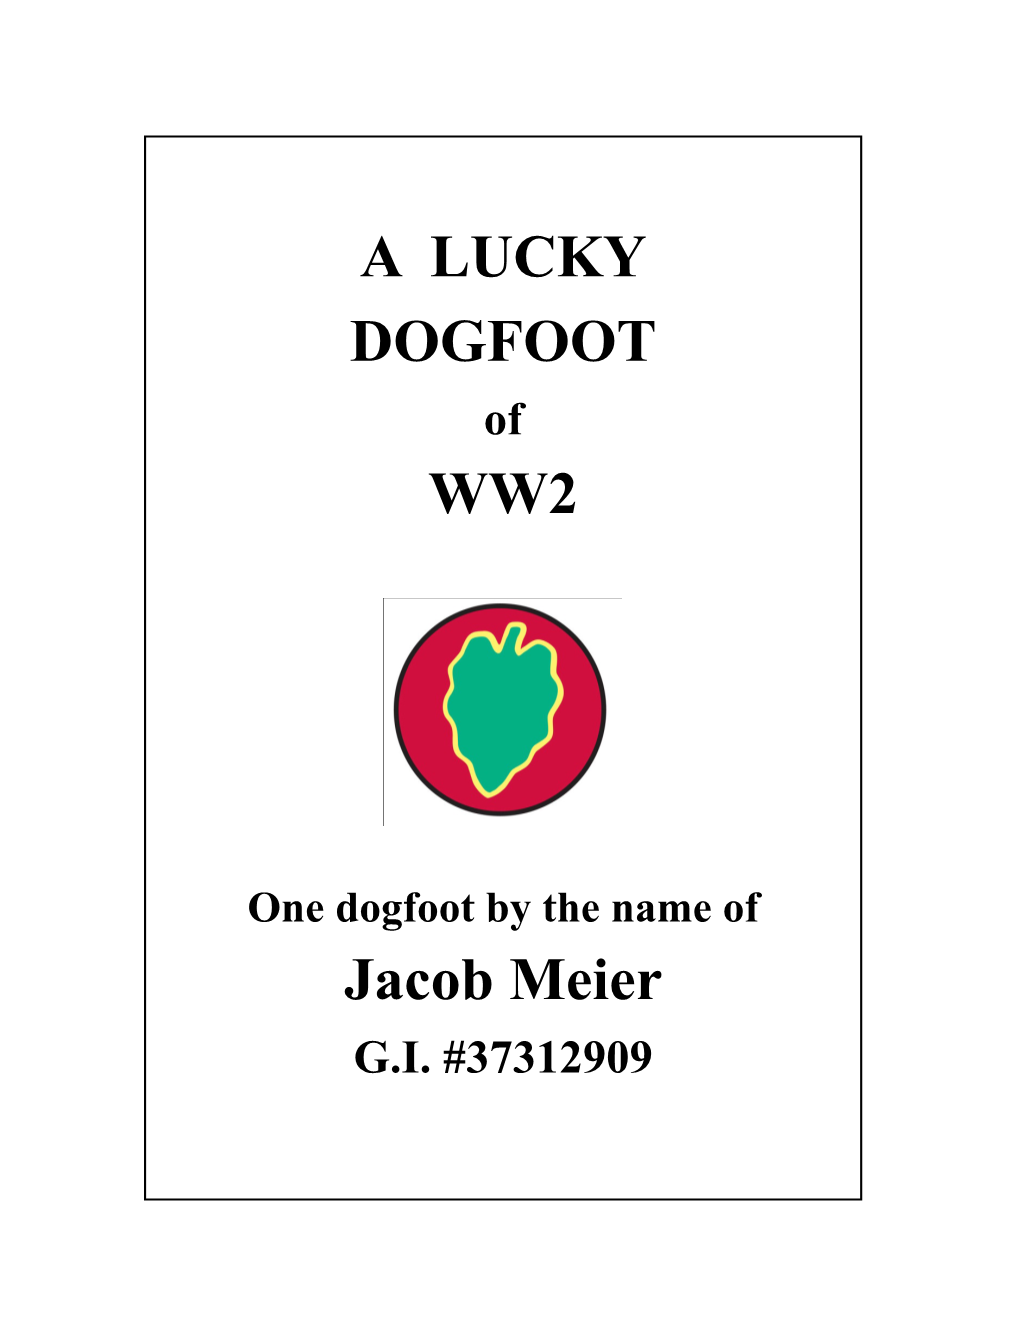 A LUCKY DOGFOOT WW2 Jacob Meier